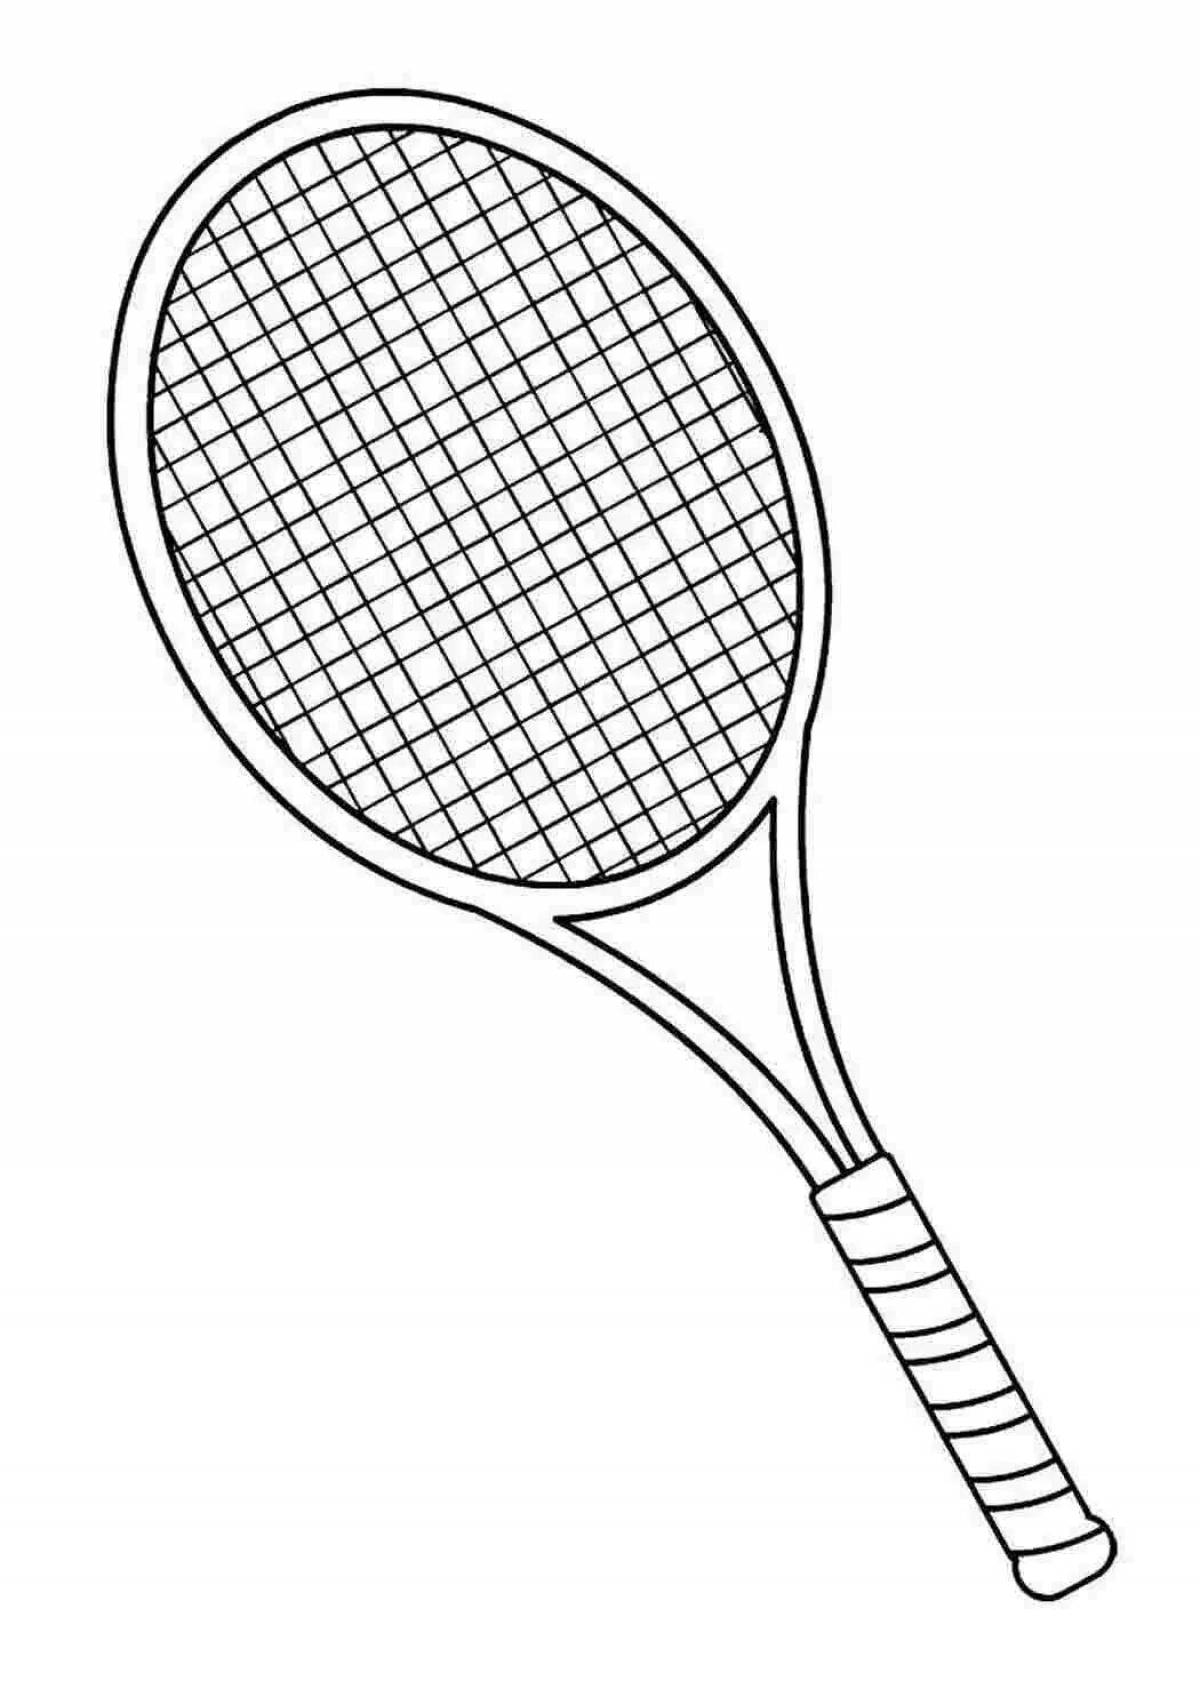 Теннисная ракетка эскиз